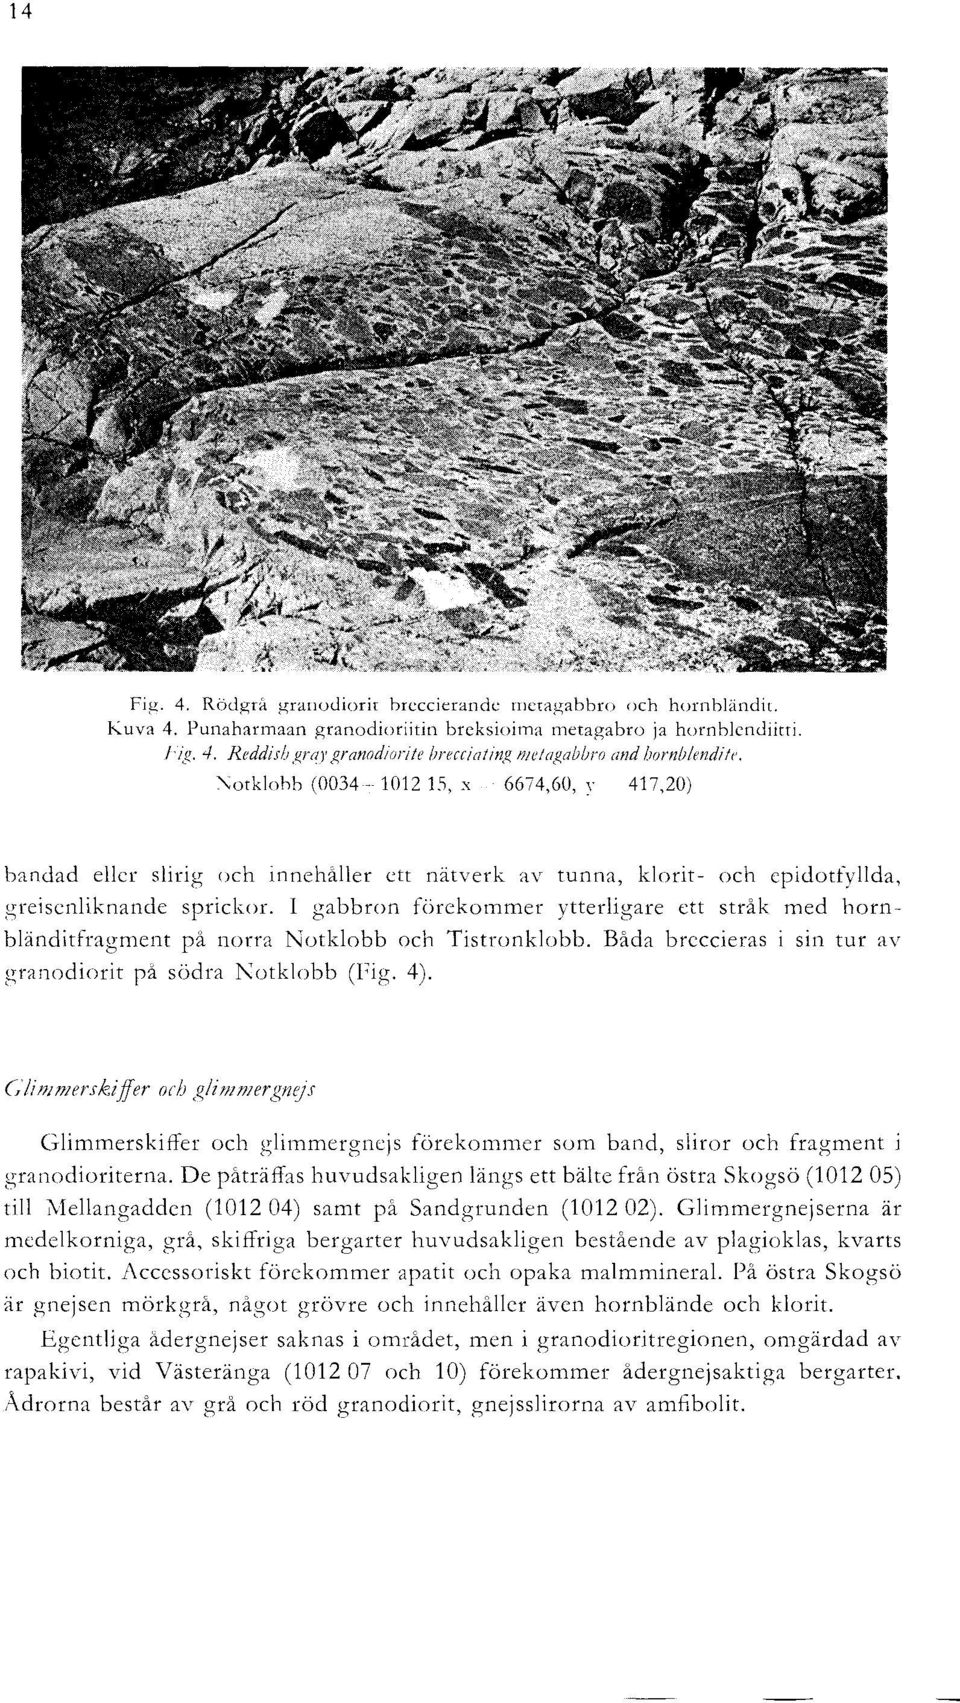 I gabbron forekommer ytterligare ett strak med hornblenditfragment pa norra Notklobb och Tistronklobb. Bada breccieras i sin tur av granodiorit pa sodra Notklobb (Fig. 4).